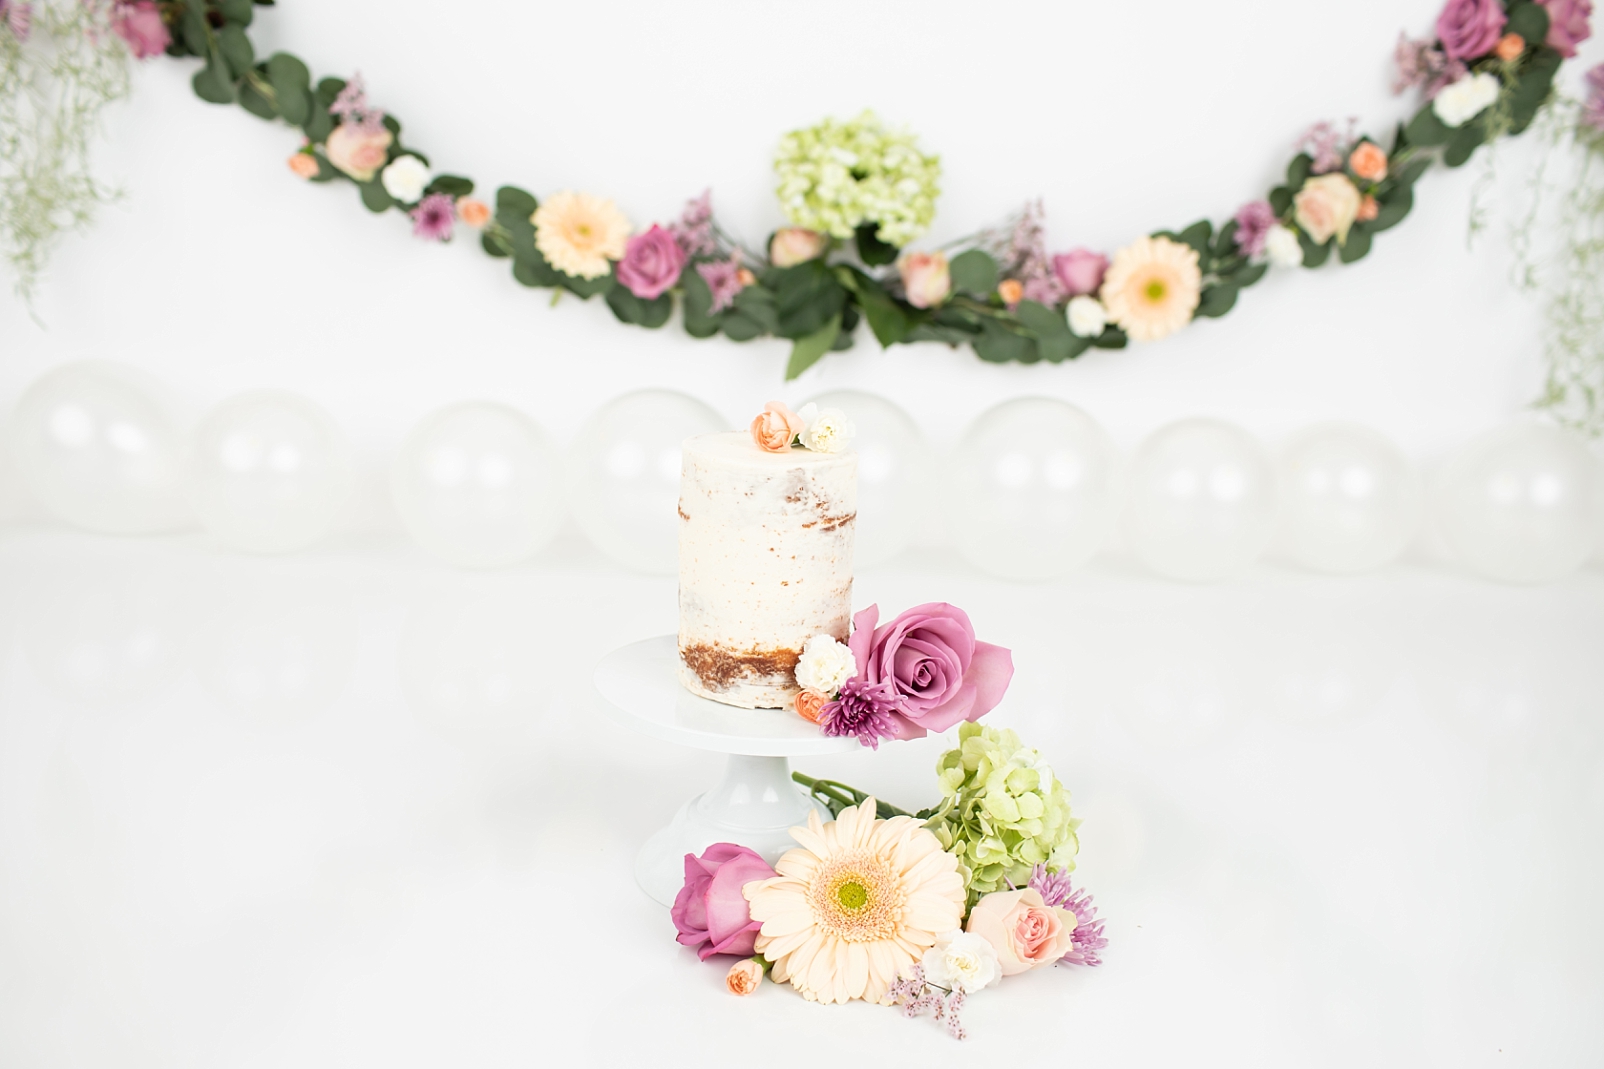 4 tier cake smash cake with fresh flower adornment | How to Choose a Smash Cake
